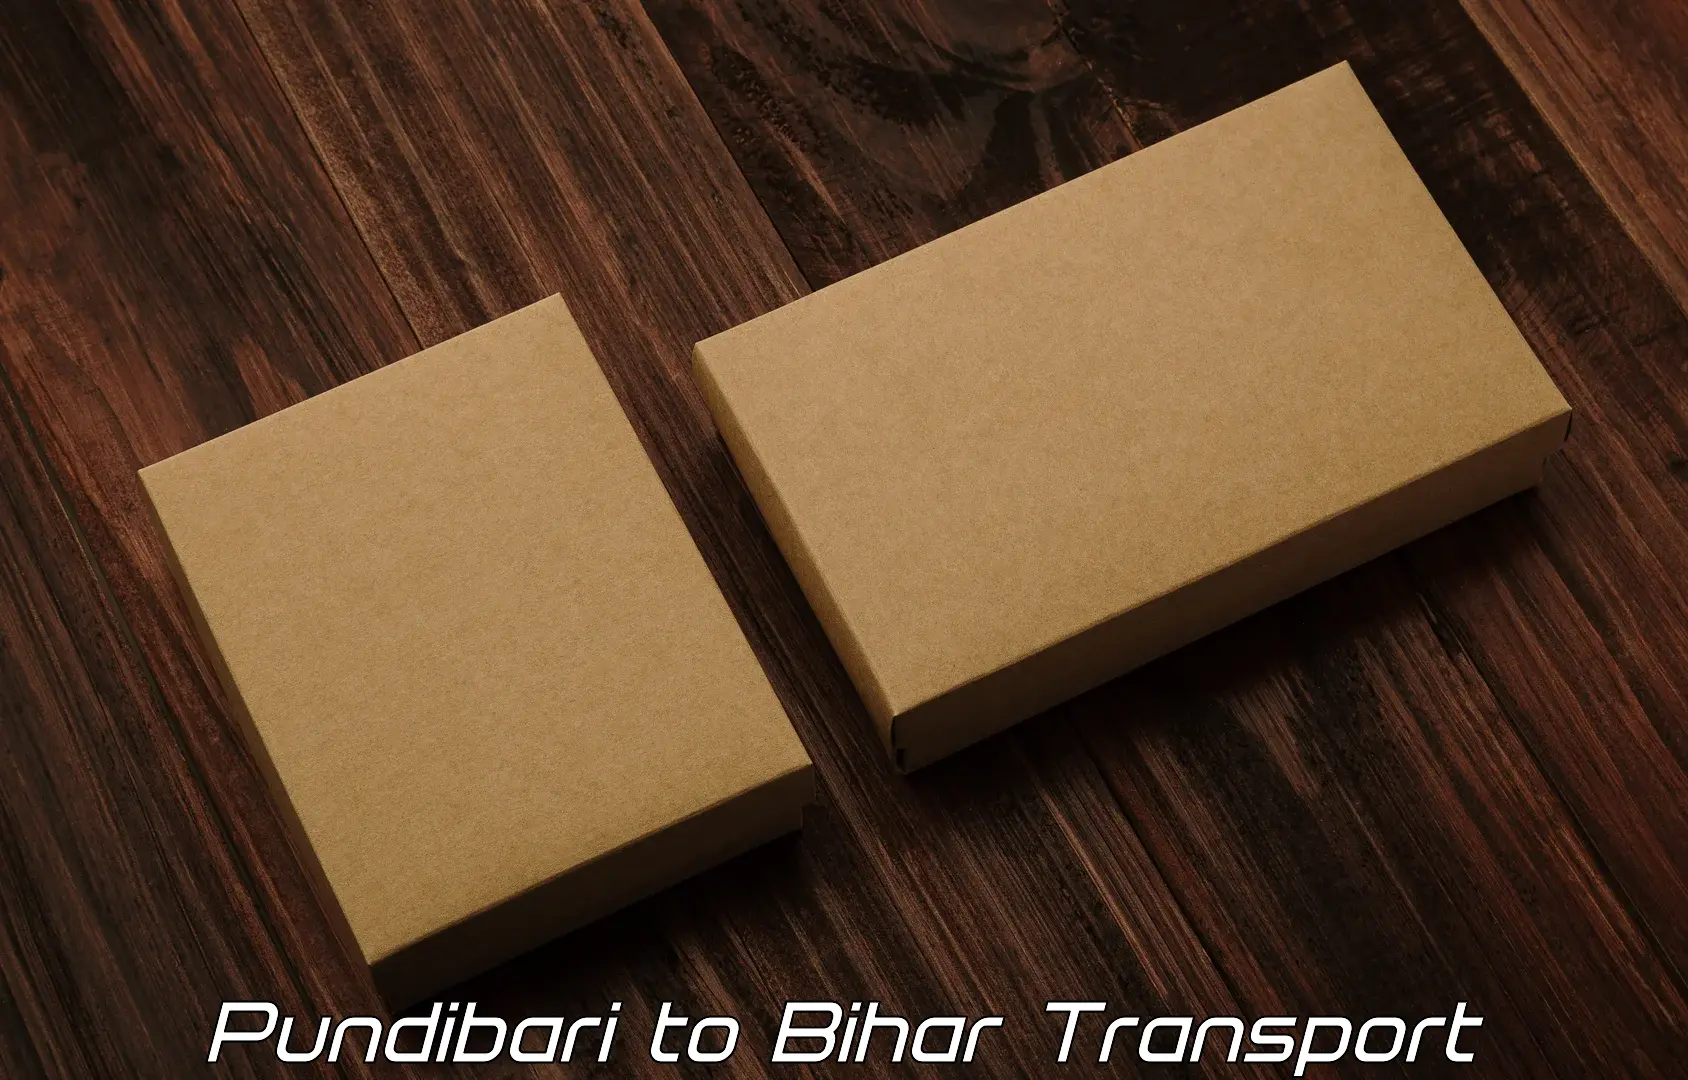 Sending bike to another city Pundibari to Bihar Sharif